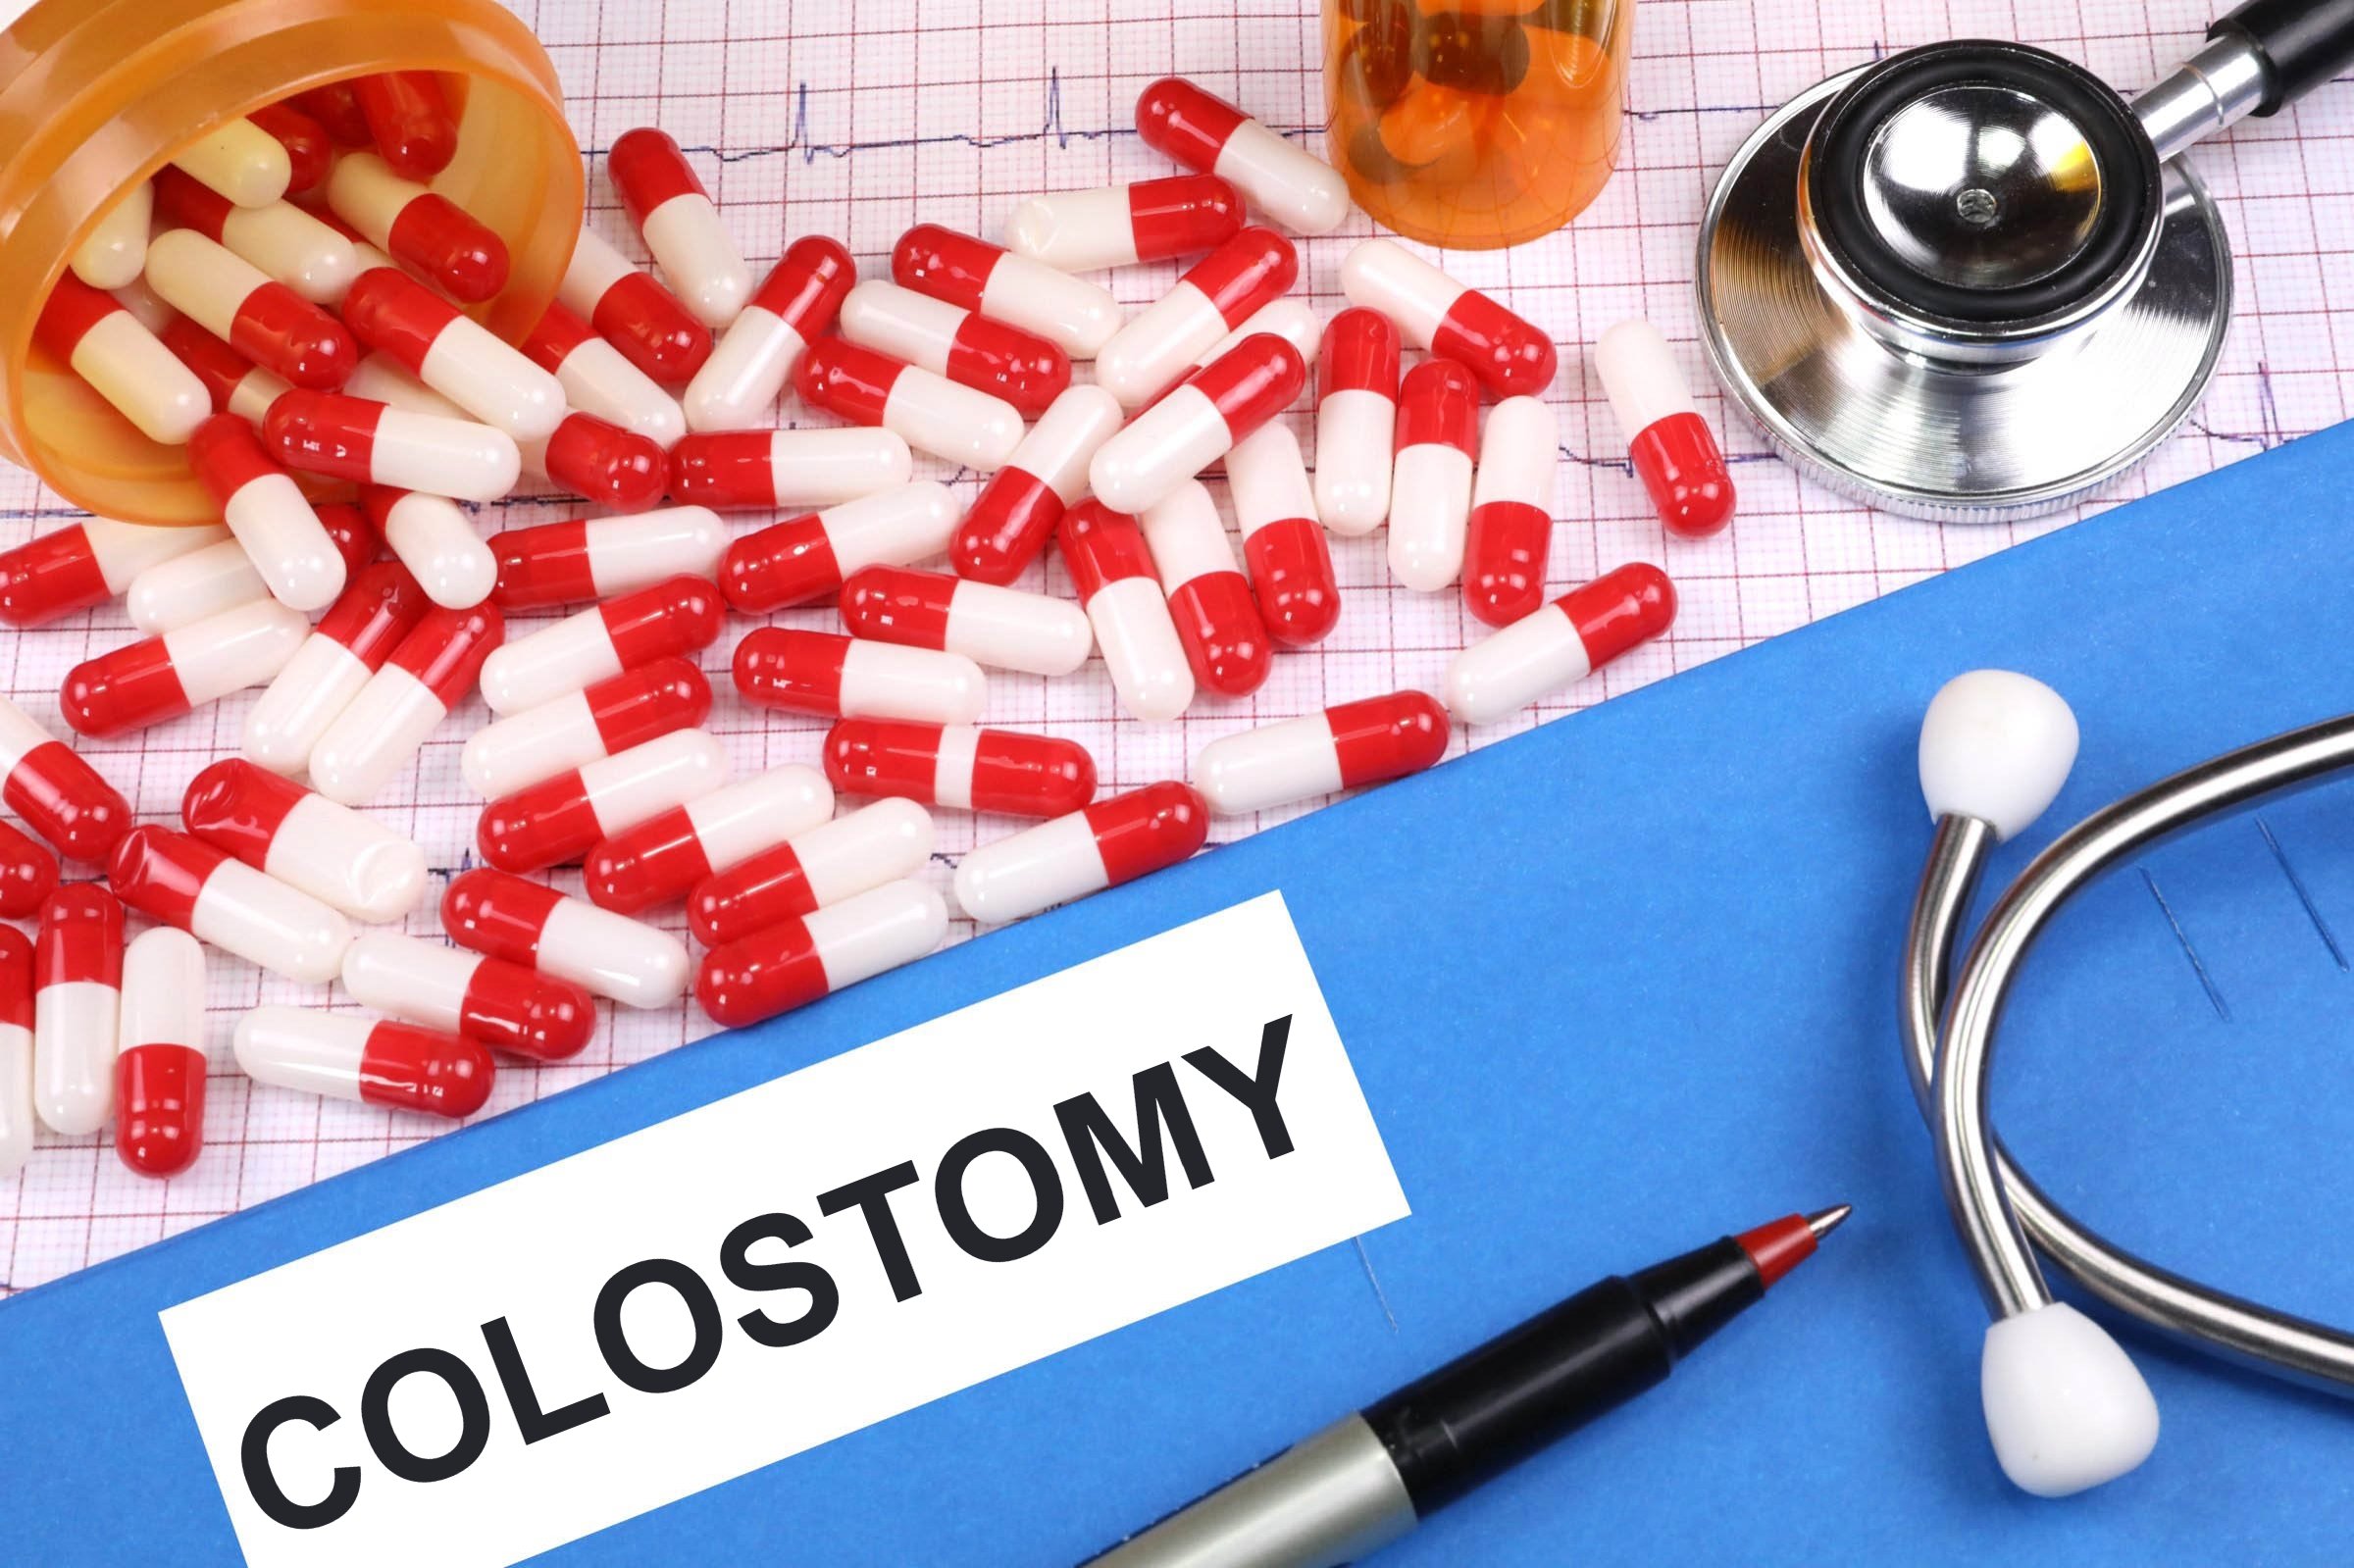 colostomy